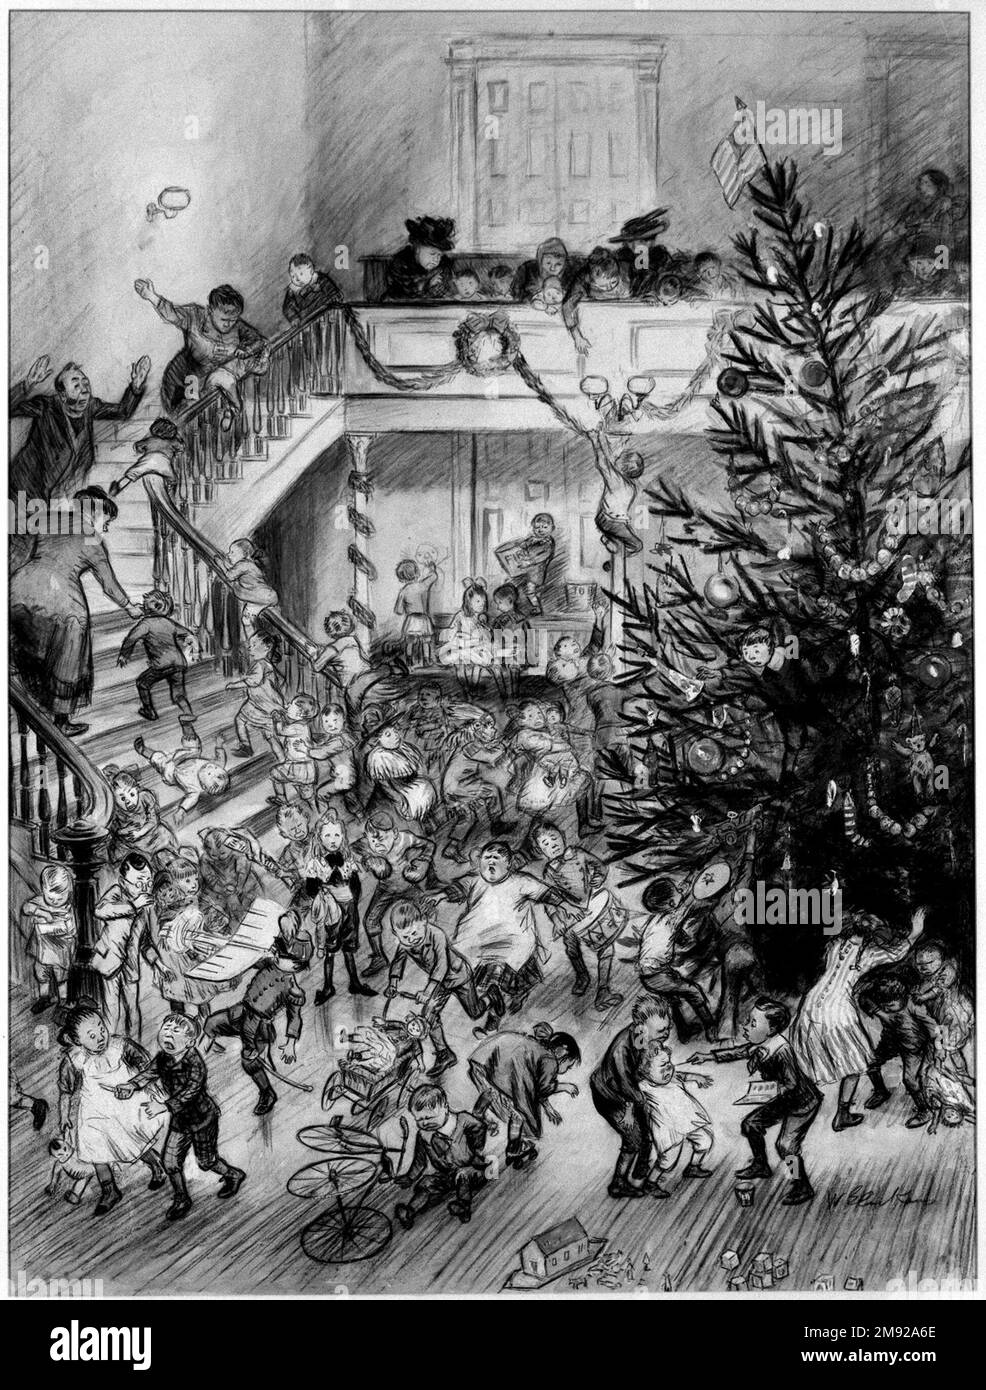 Joyeux Noël (Yuletide Revels) William Glackens (américain, 1870-1938). Joyeux Noël (Yuletide Revels), env. 1910. Graphite, crayon conté, encre, et aquarelle transparente et opaque sur panneau laminé collé sur panneau à pâte de bois, feuille: 24 3/8 x 18 1/2 po. (61,9 x 47 cm). Plein de vignettes humoristiques, ce travail présente William Glackens à la hauteur de ses pouvoirs en tant que dessinateur et conteur. Dans une grande pièce décorée pour Noël, les enfants jouent avec leurs nouveaux jouets, souvent avec des conséquences douloureuses, tandis que quelques adultes font des tentatives futiles pour contrôler le chaos. La figure de Glackens Banque D'Images